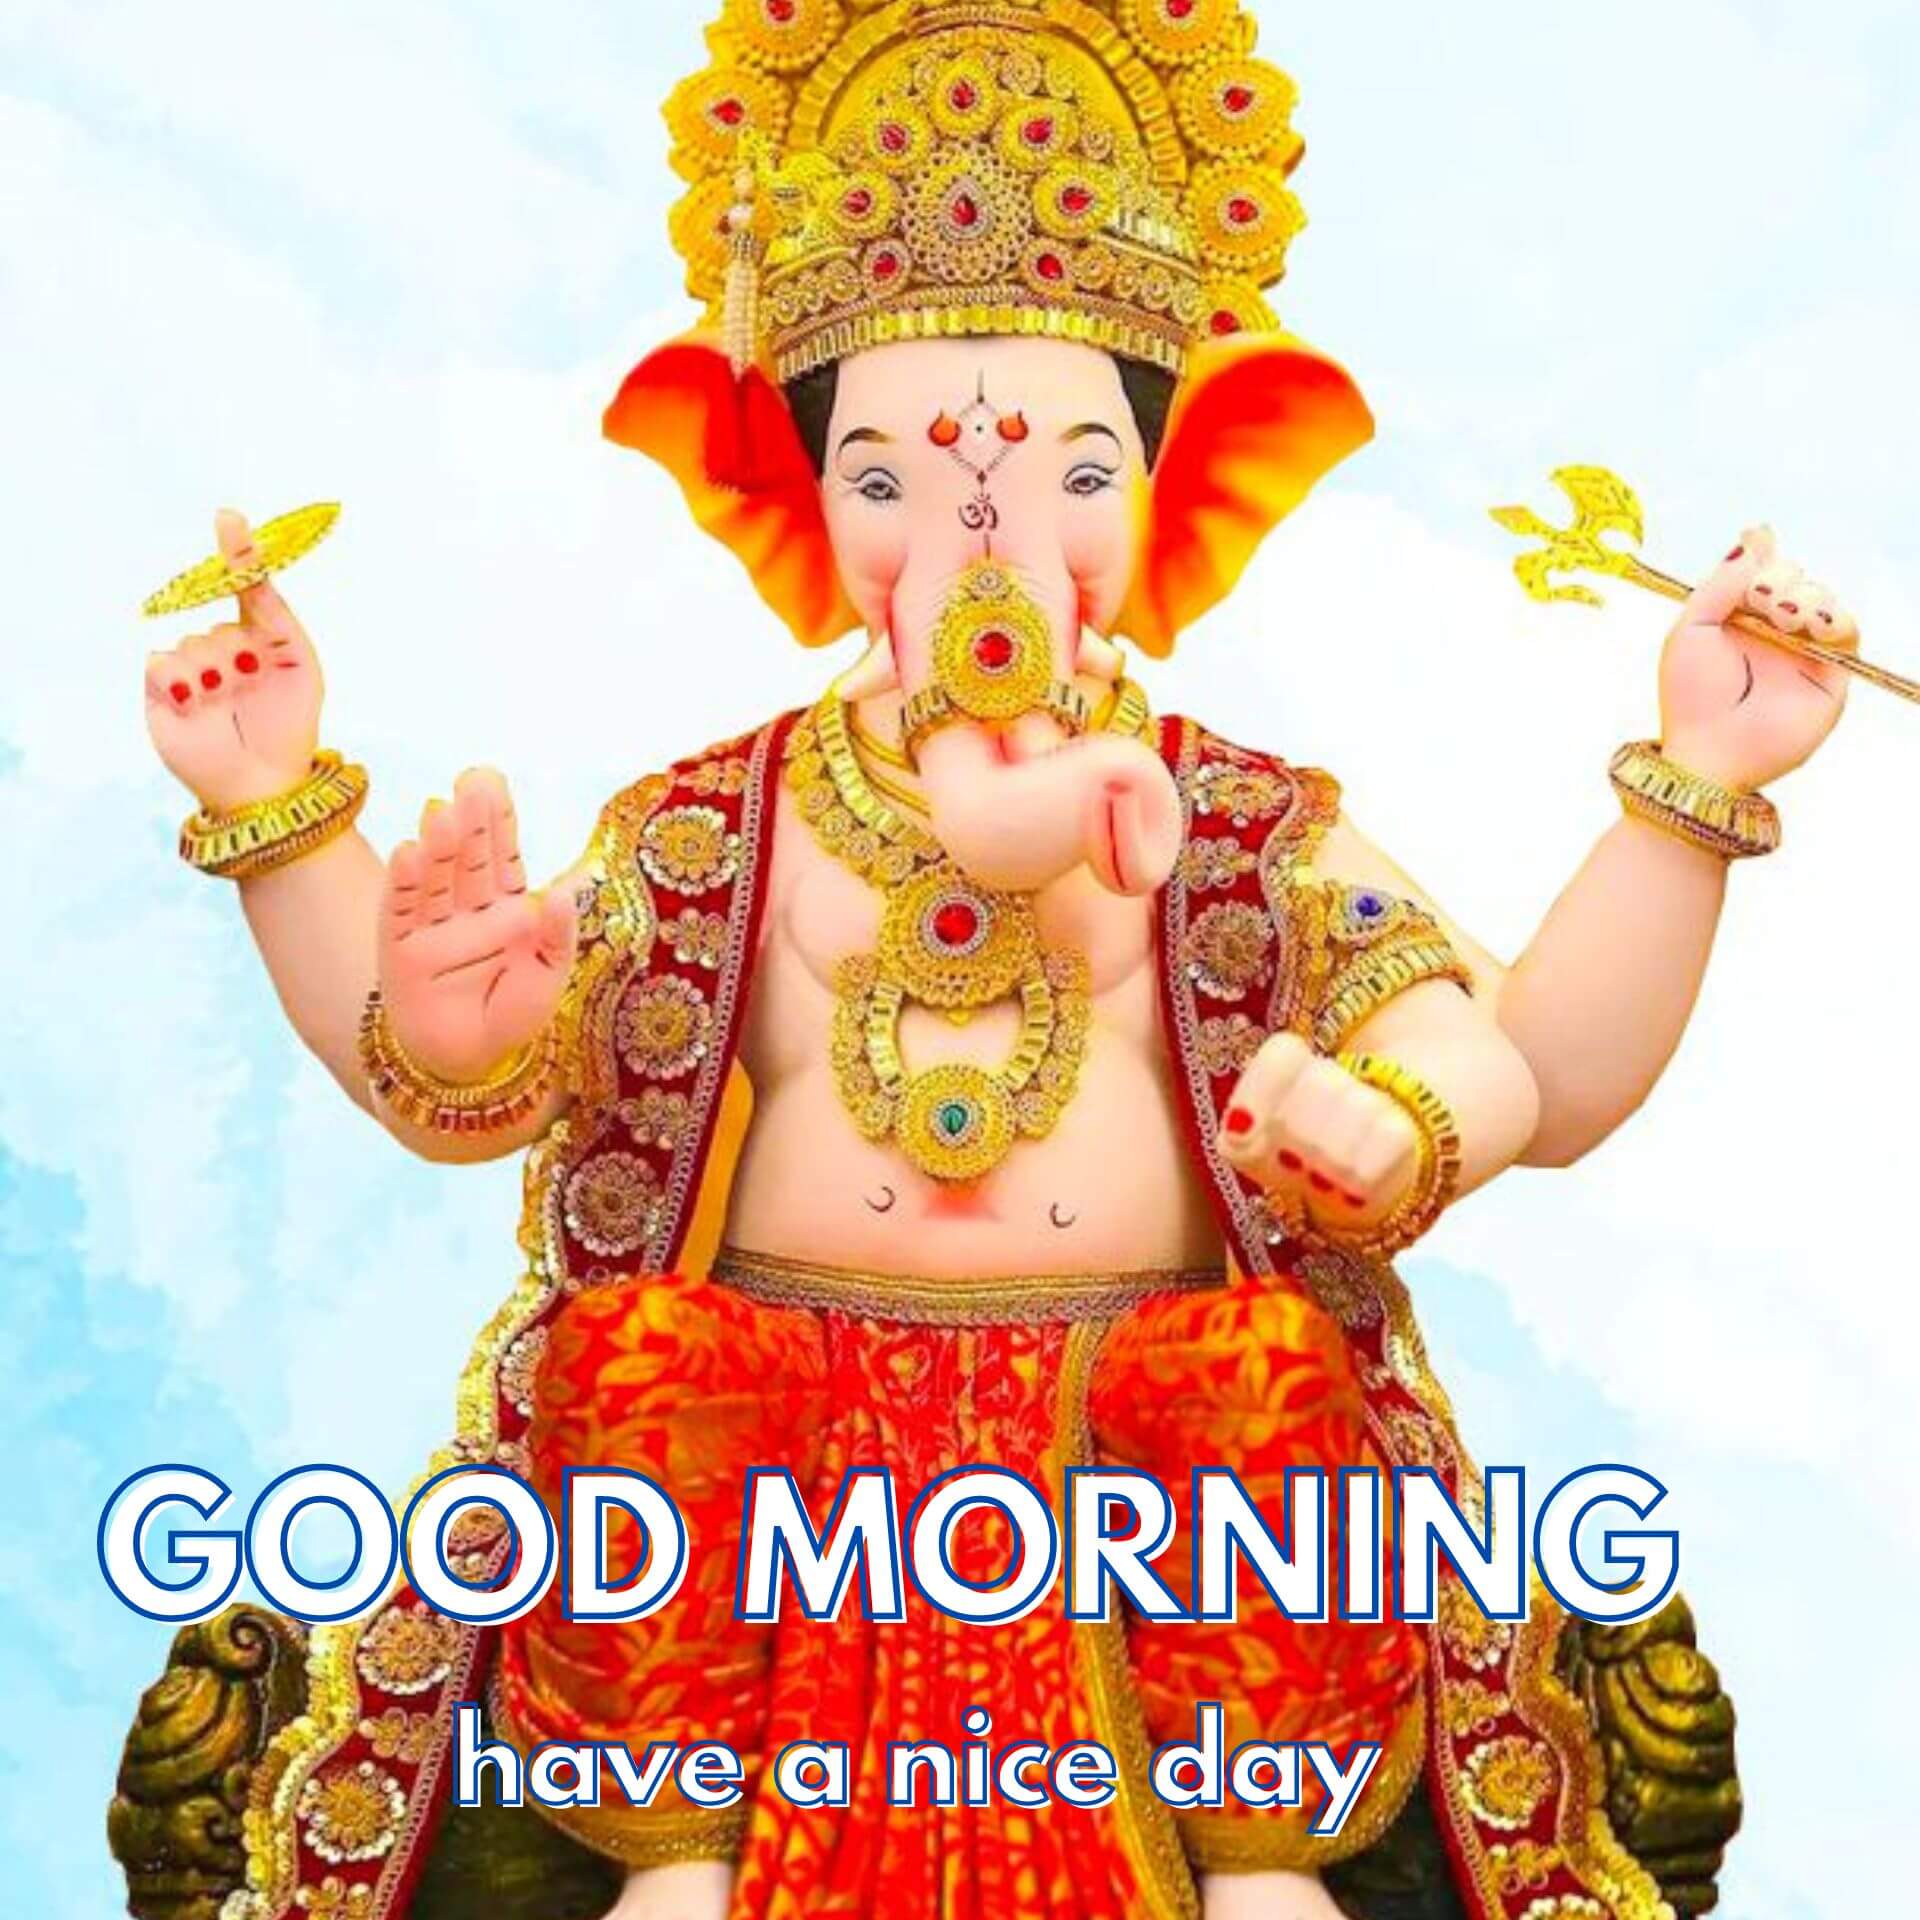 Lord God Ganesha Ji Good Morning Pics Images Free Download